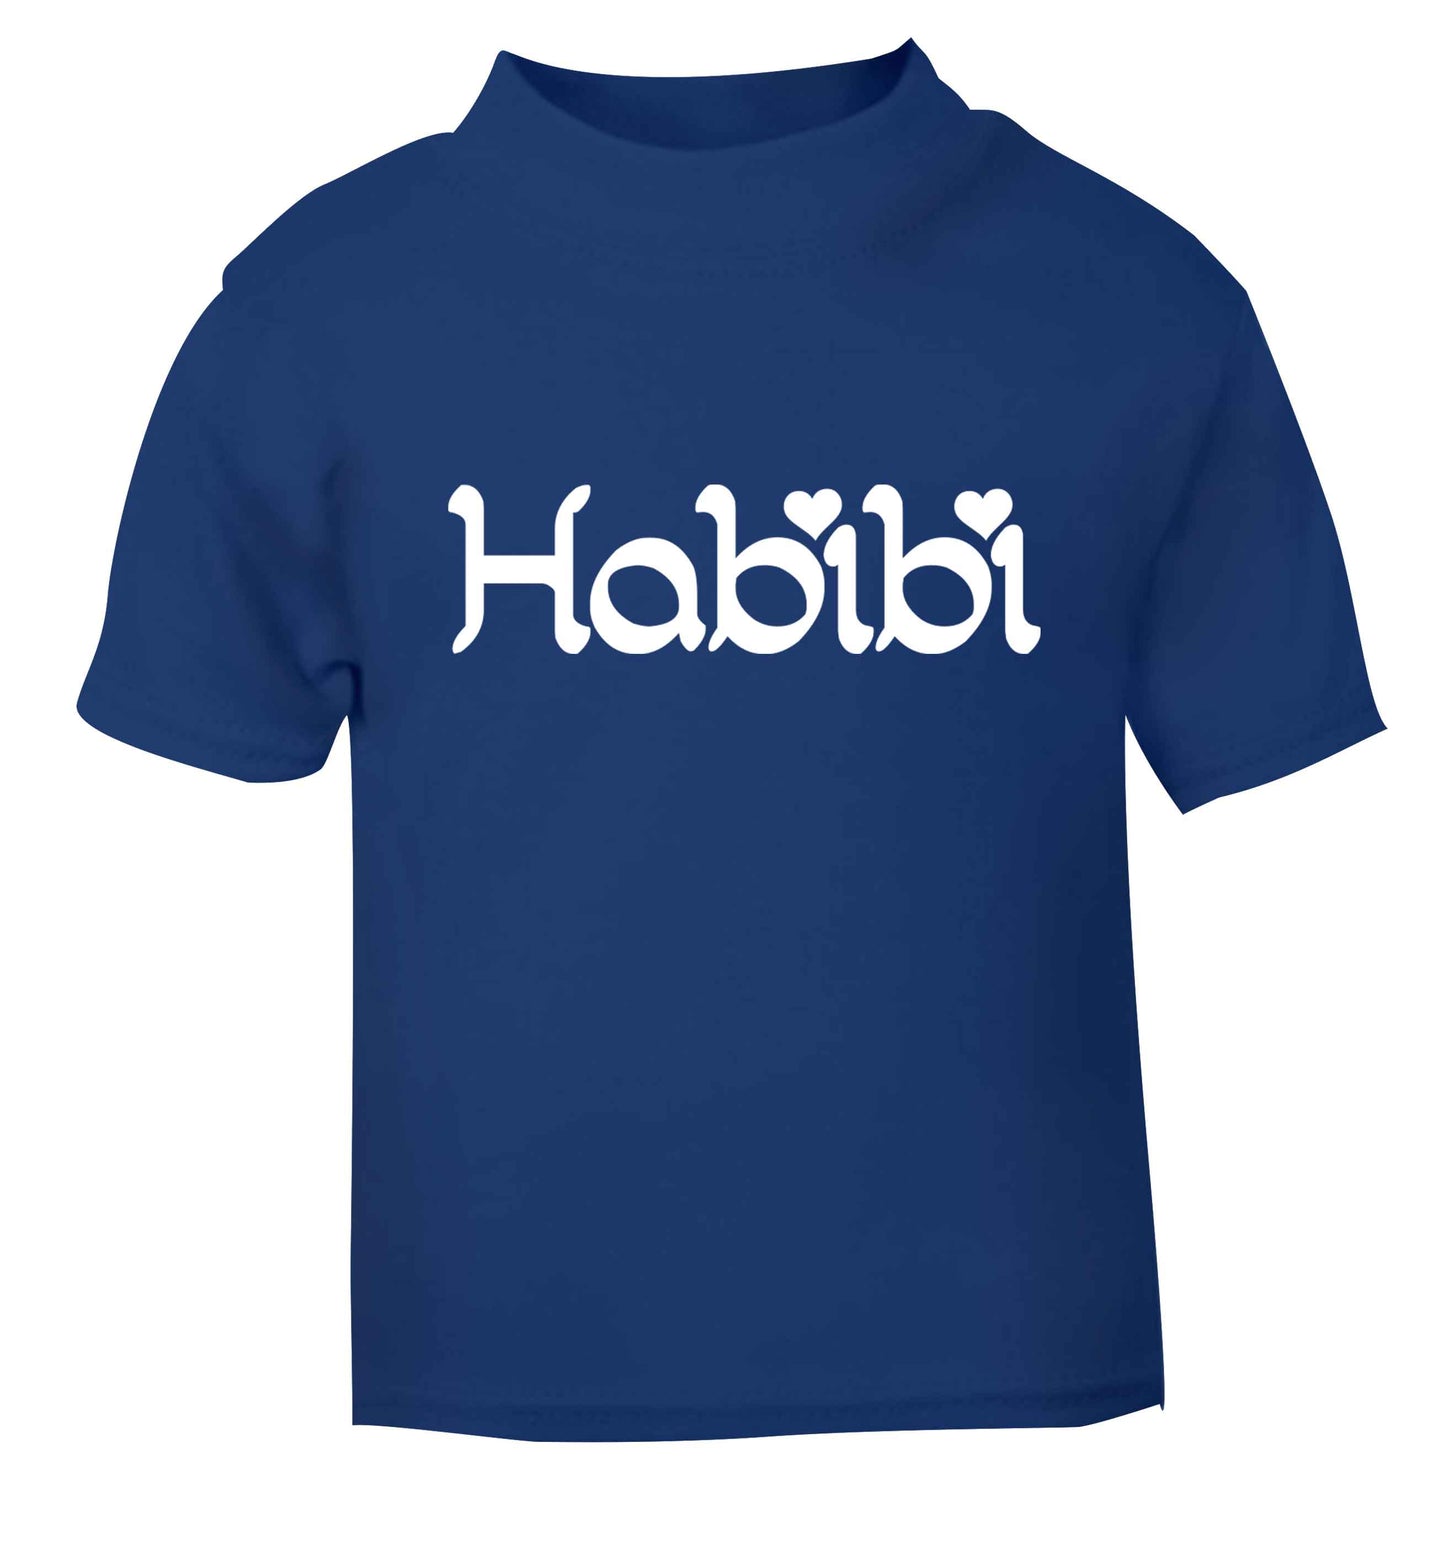 Habibi blue baby toddler Tshirt 2 Years